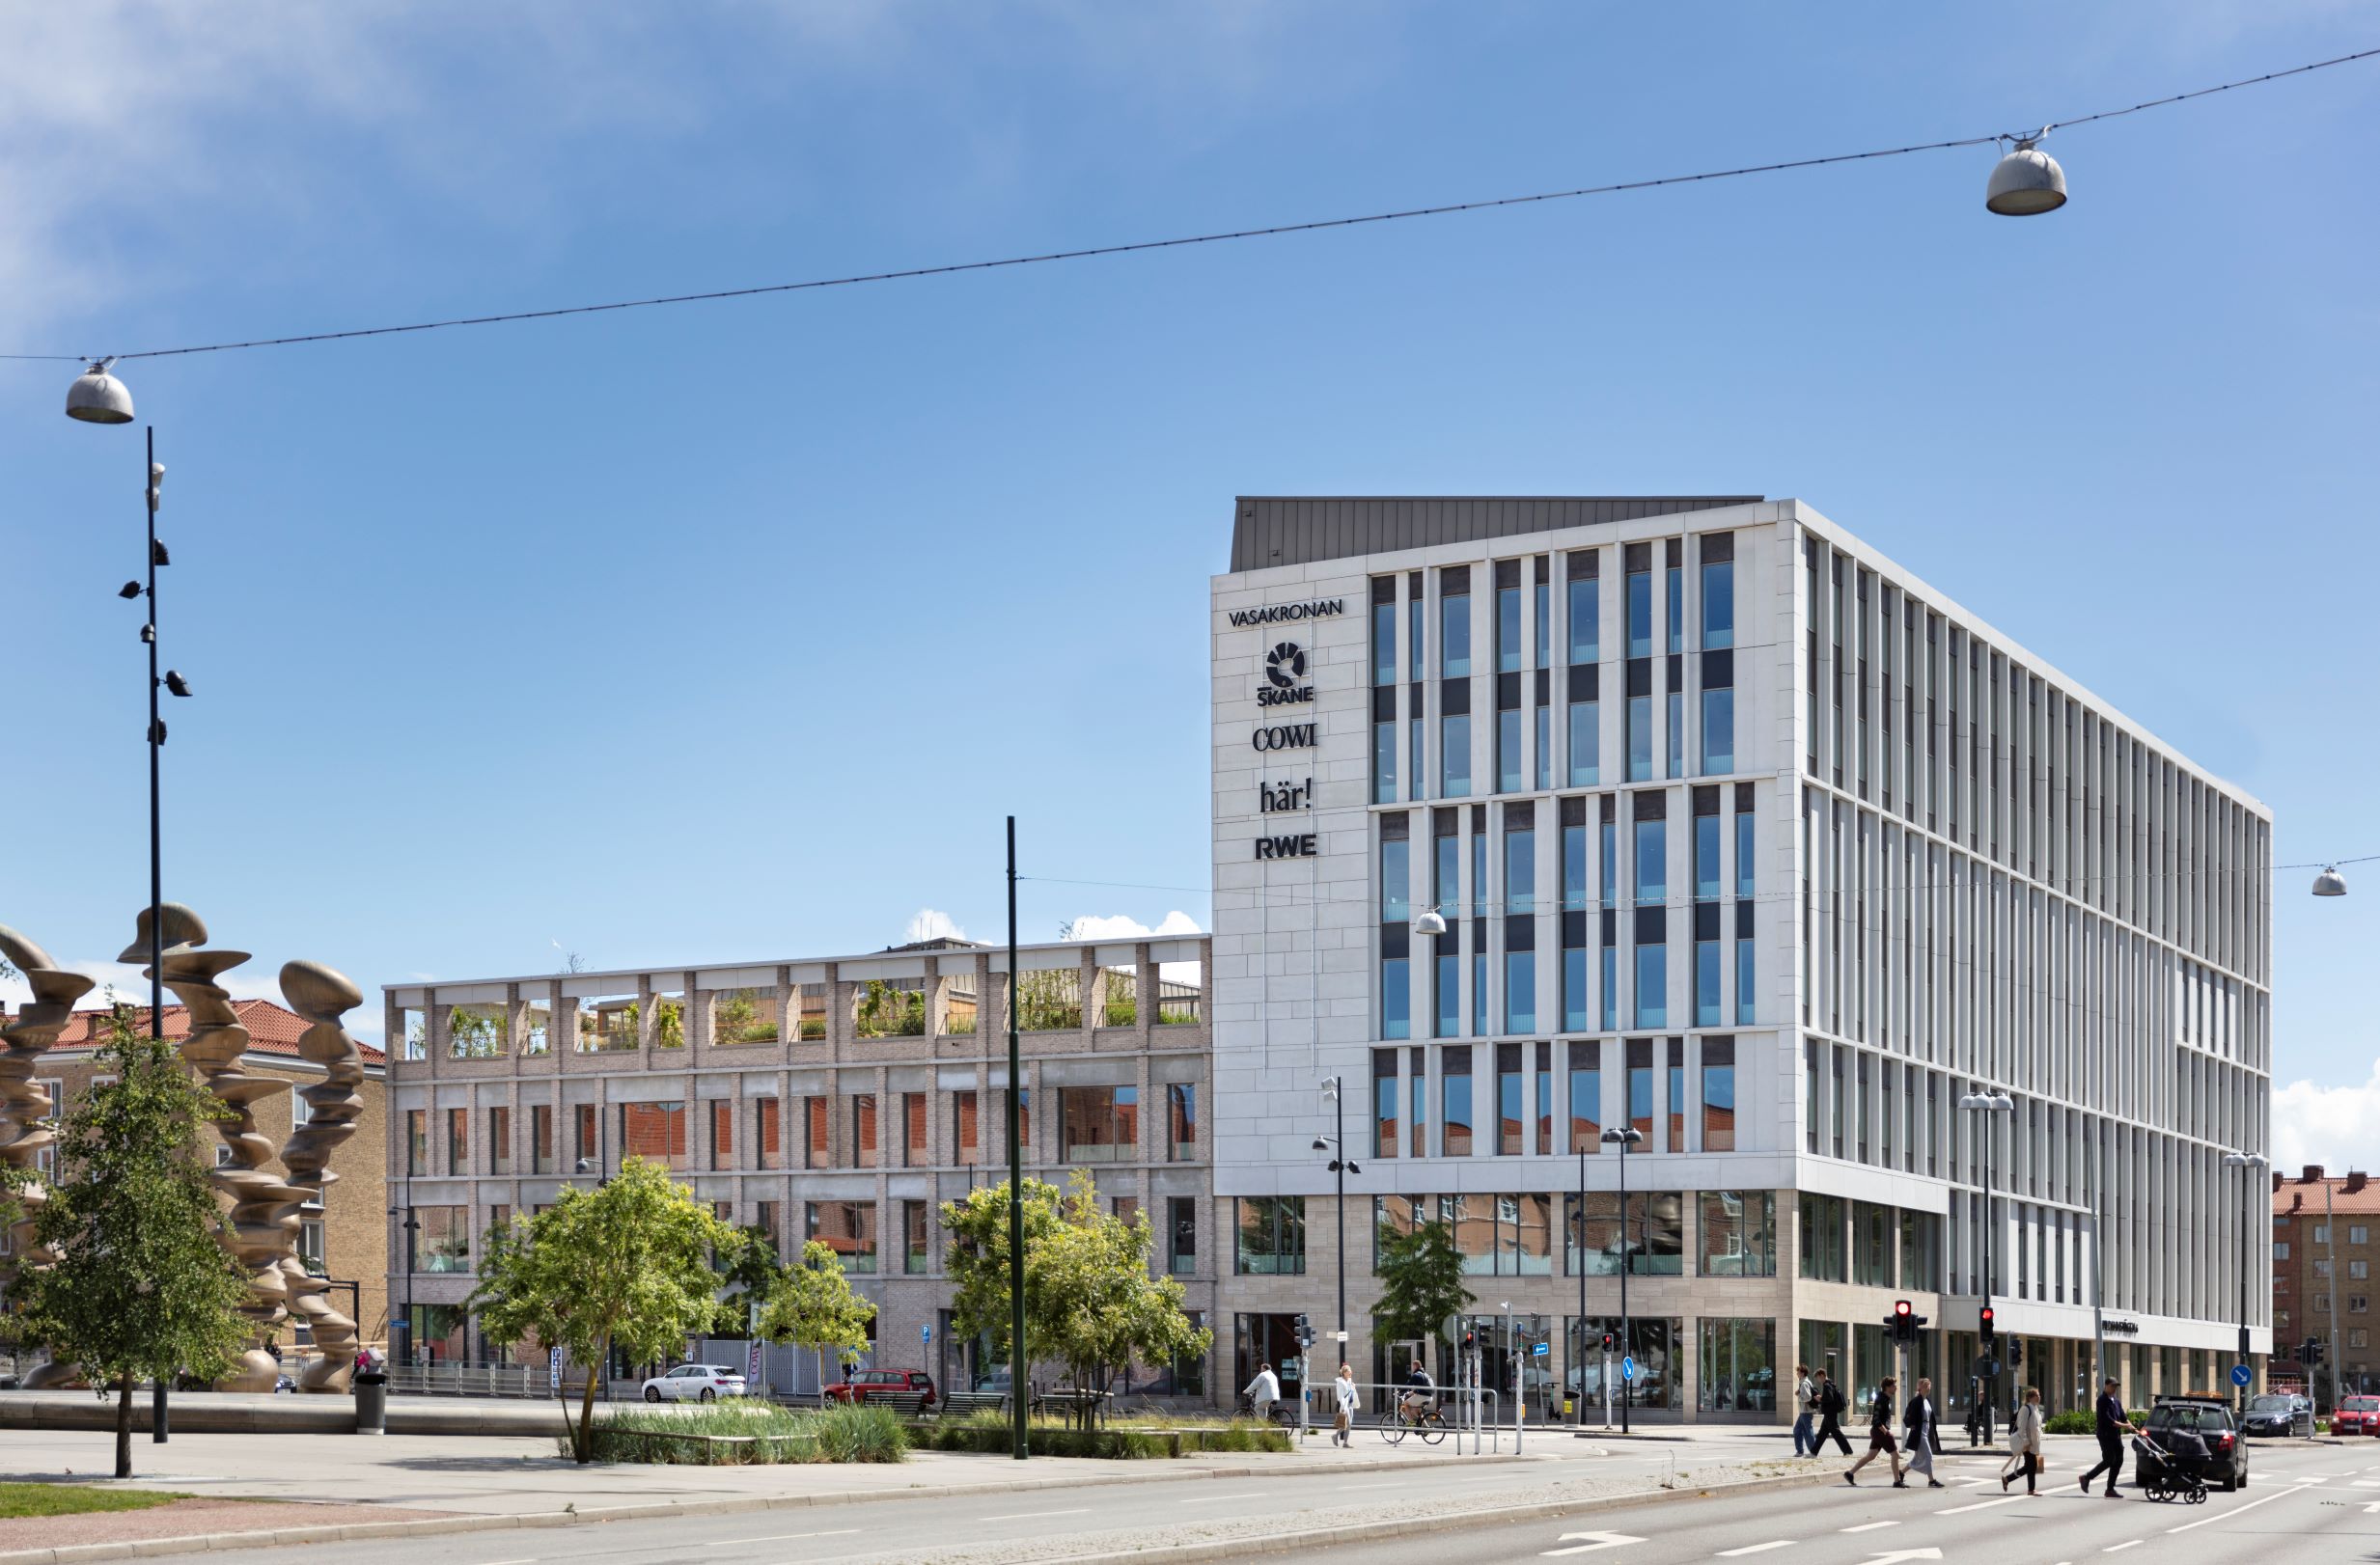 Vasakronan building in Malmö.